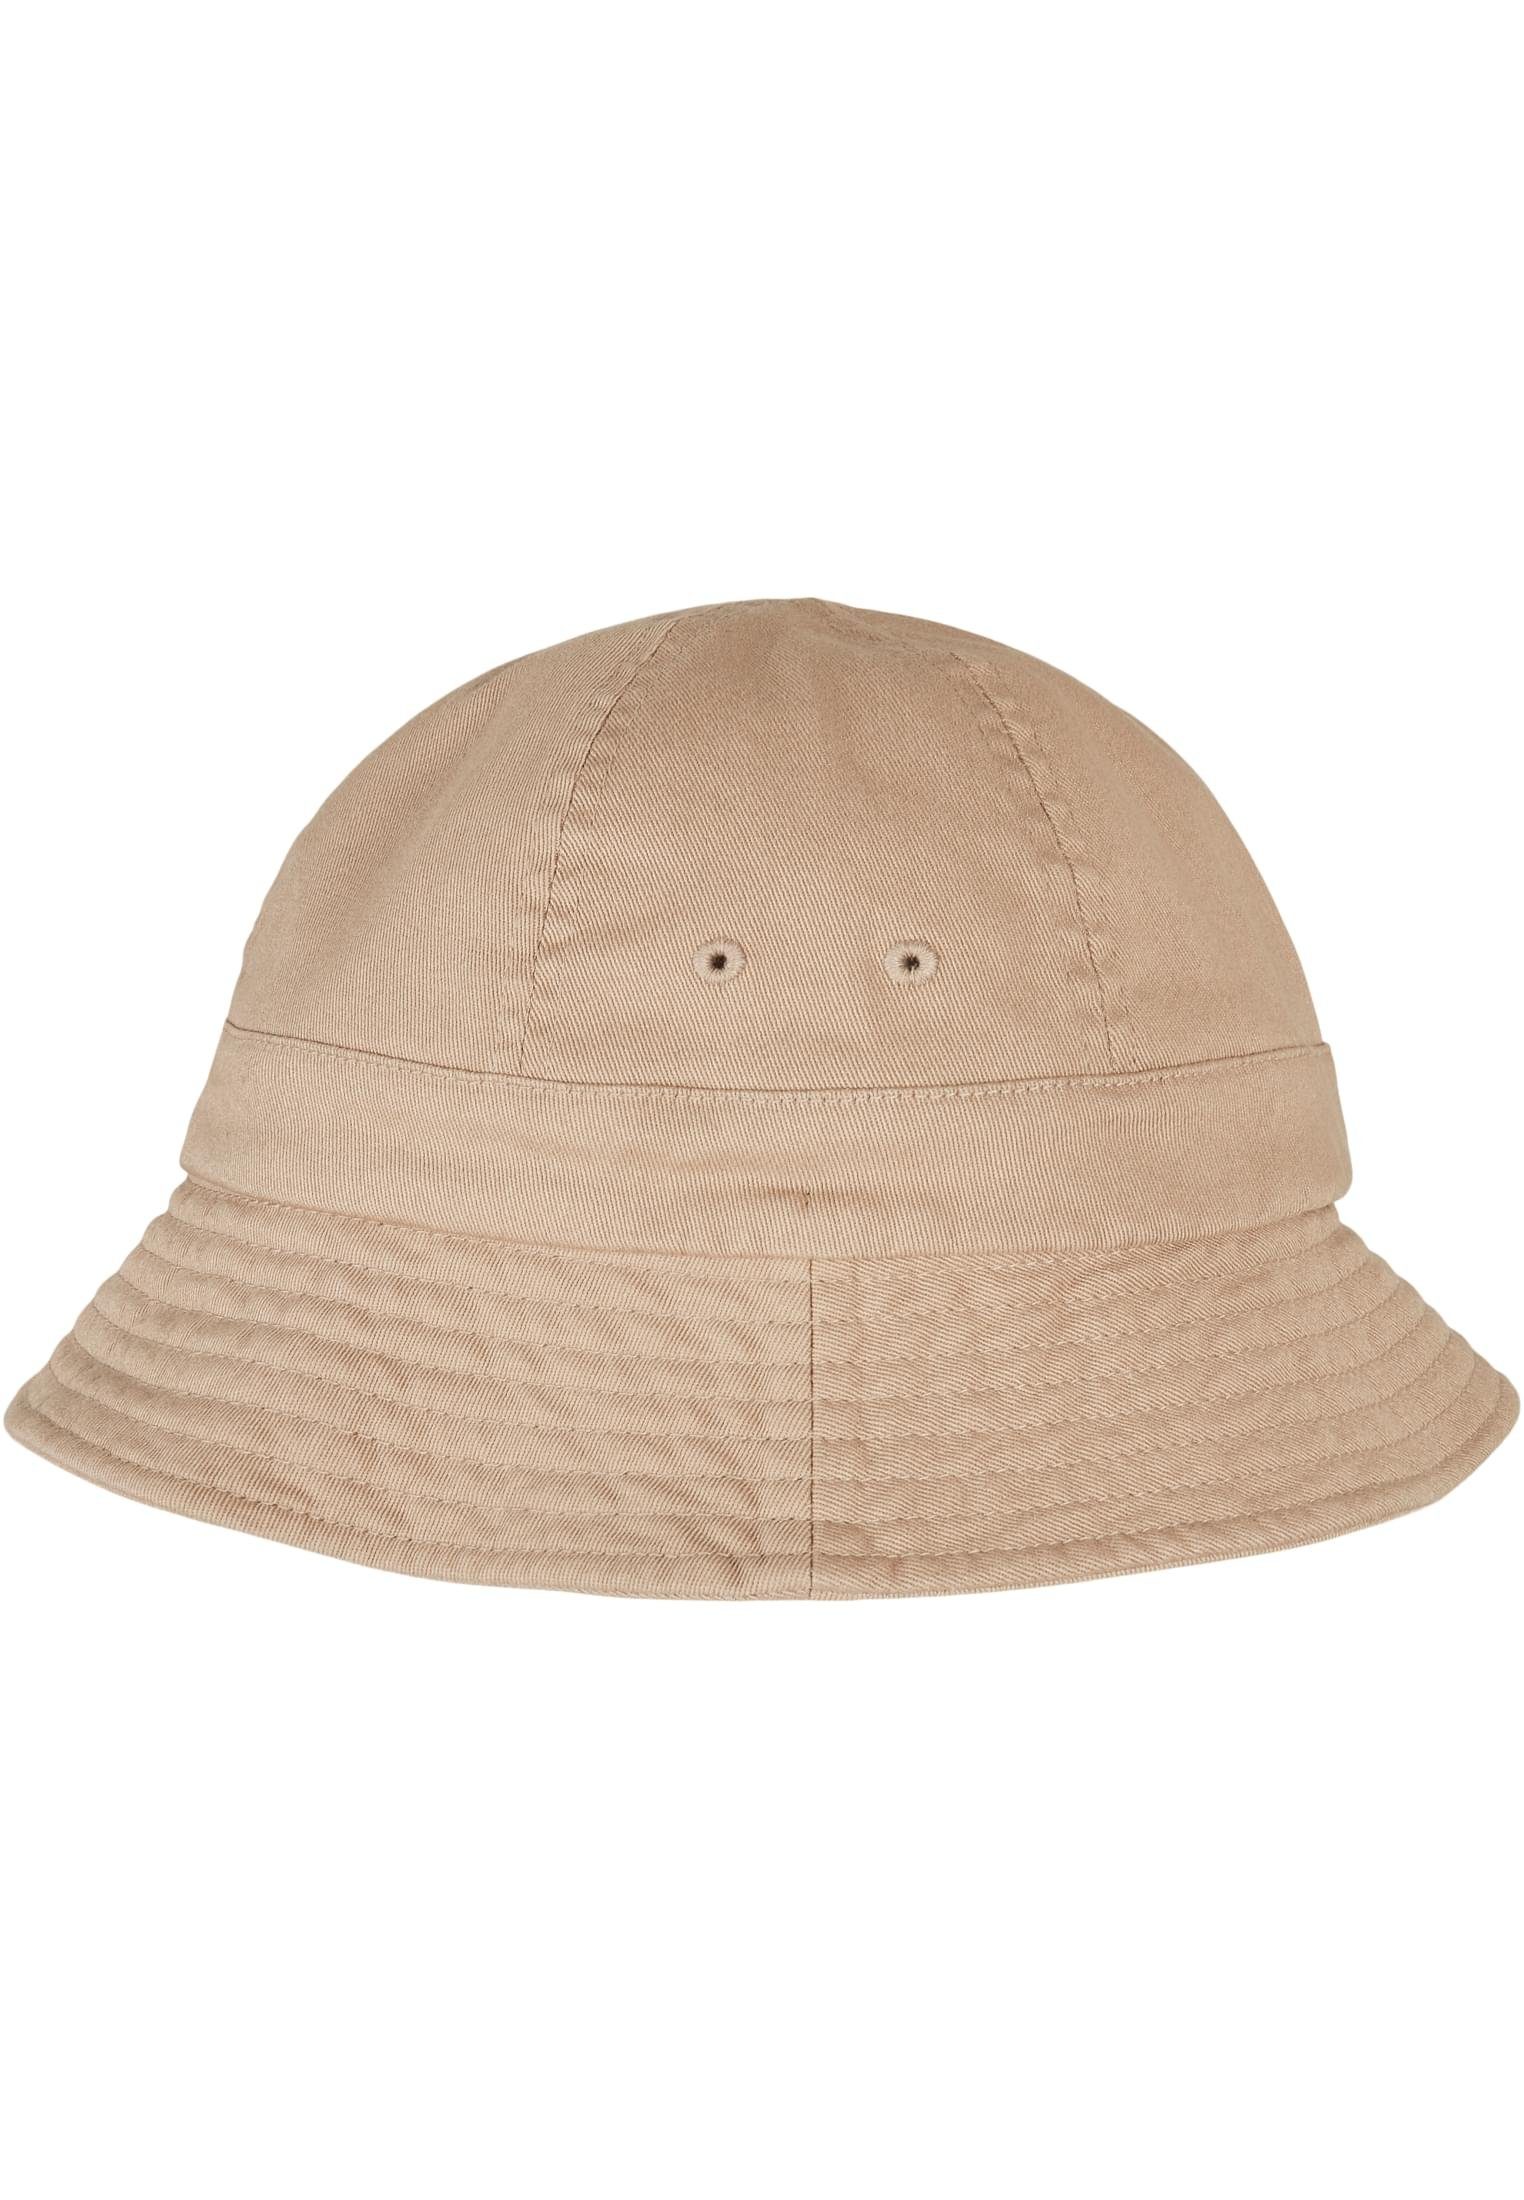 Flexfit Flex Cap Tennis khaki Flexfit Eco Hat Washing Accessoires Notop